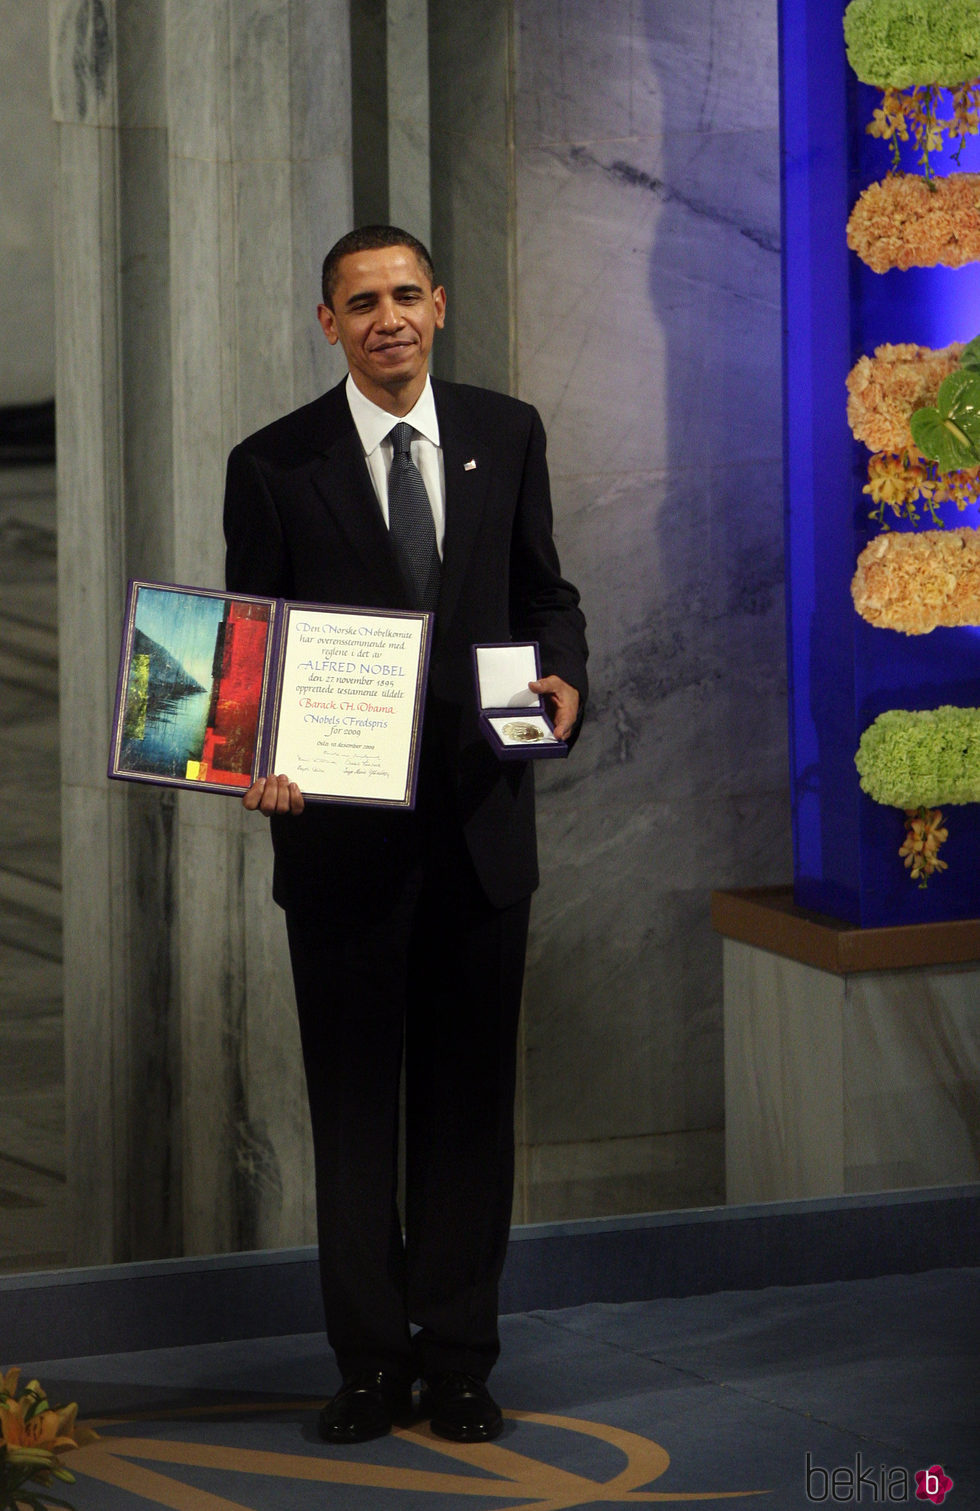 Barack Obama, elegido Premio Nobel de la Paz en 2009